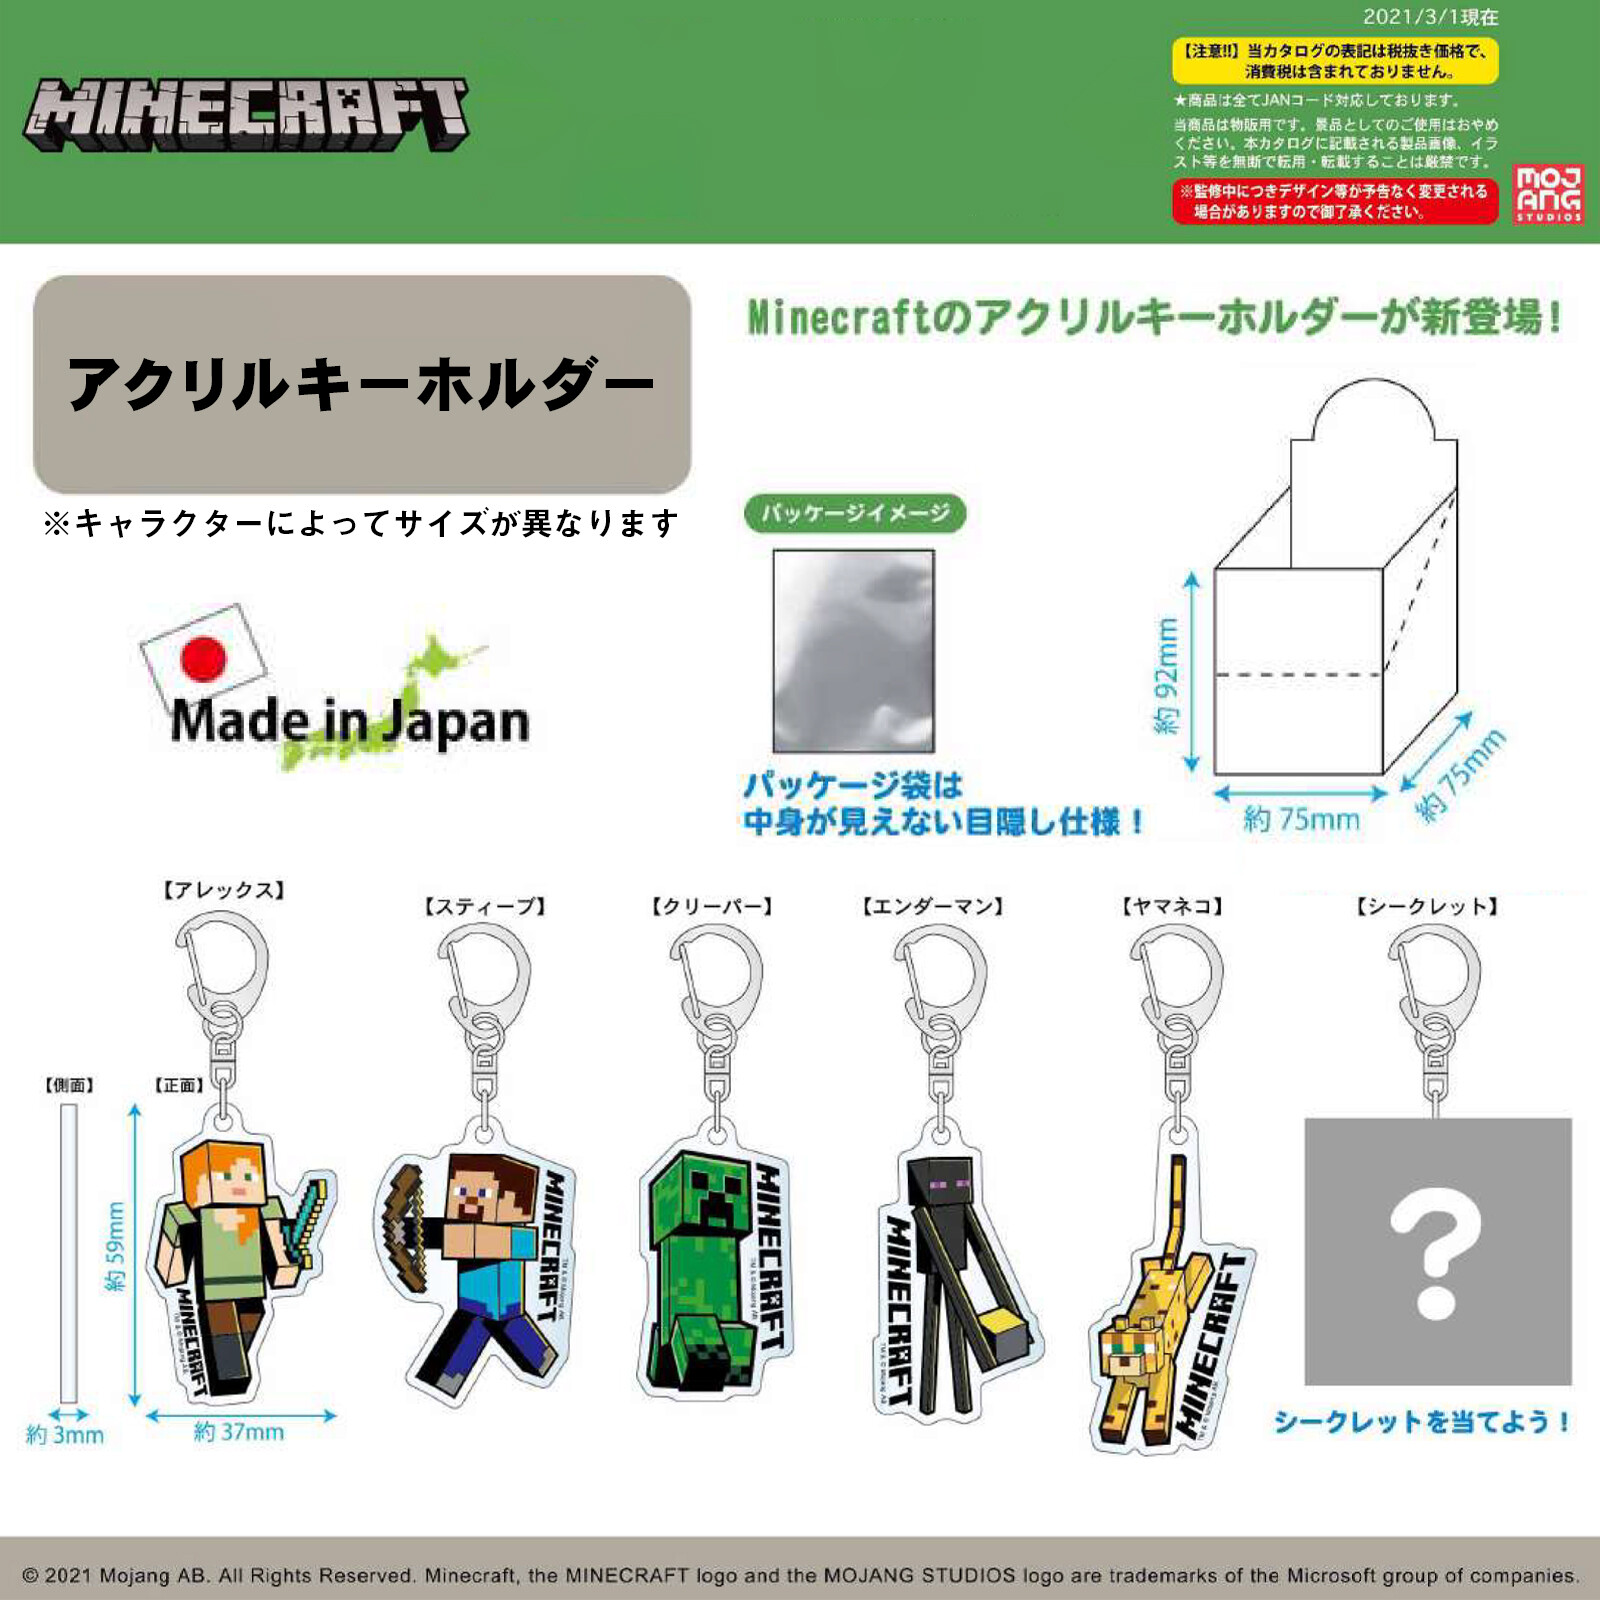 Minecraftアクリルキーホルダー 日本製 マイクラ キーチェーン 21新作の商品ページ 卸 仕入れサイト スーパーデリバリー